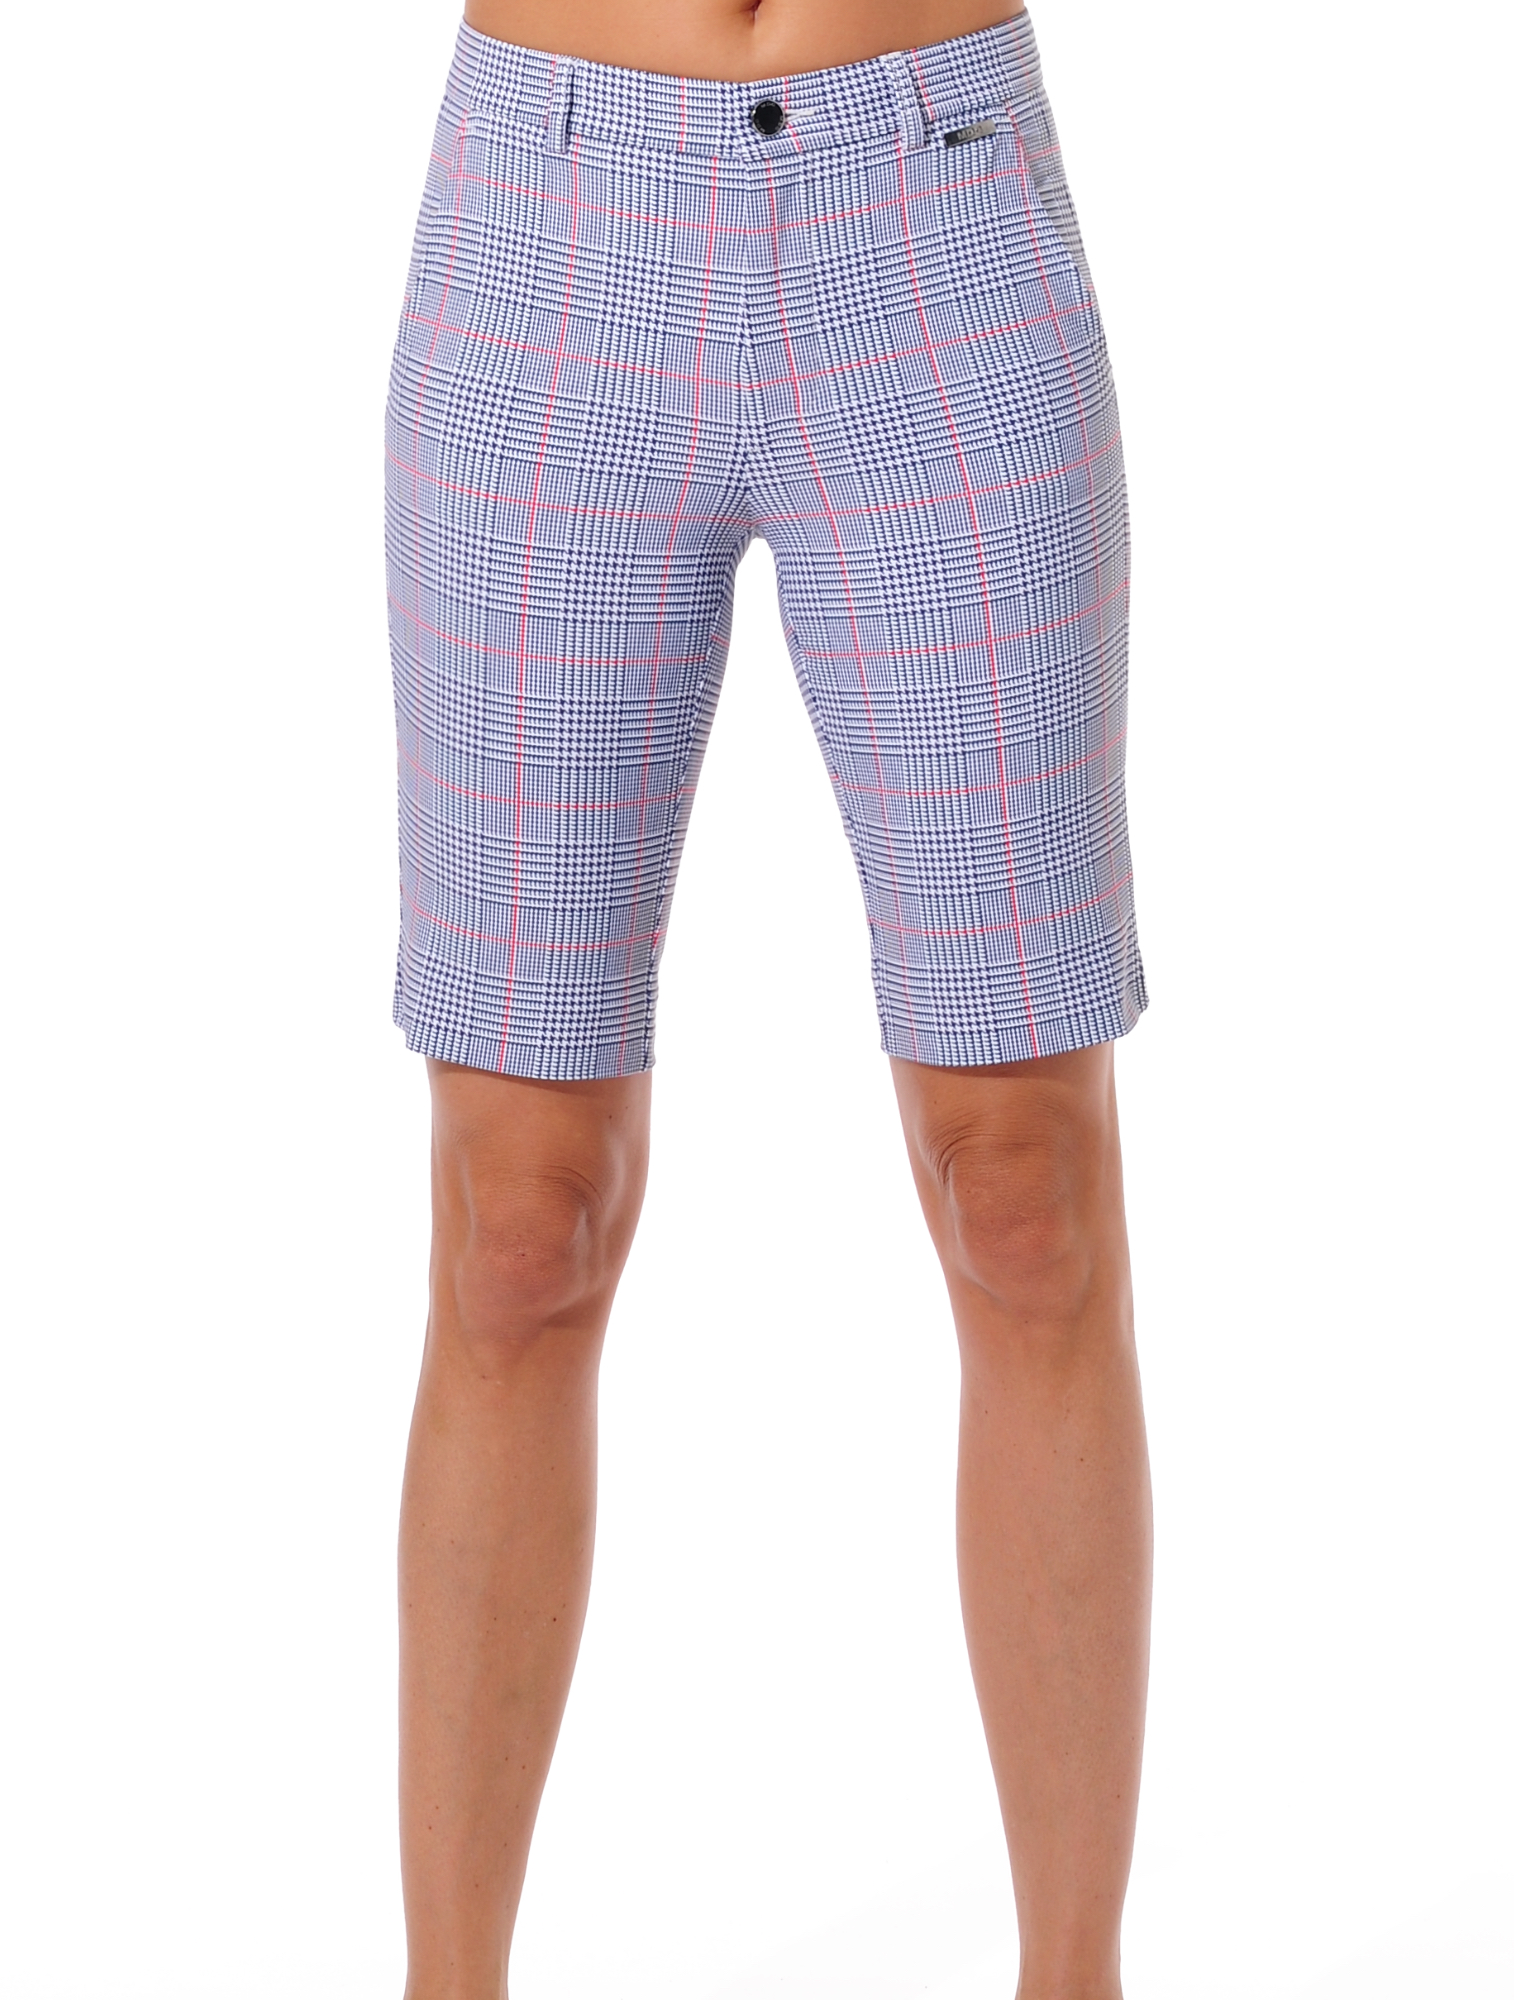 Glencheck print golf bermuda shorts navy 